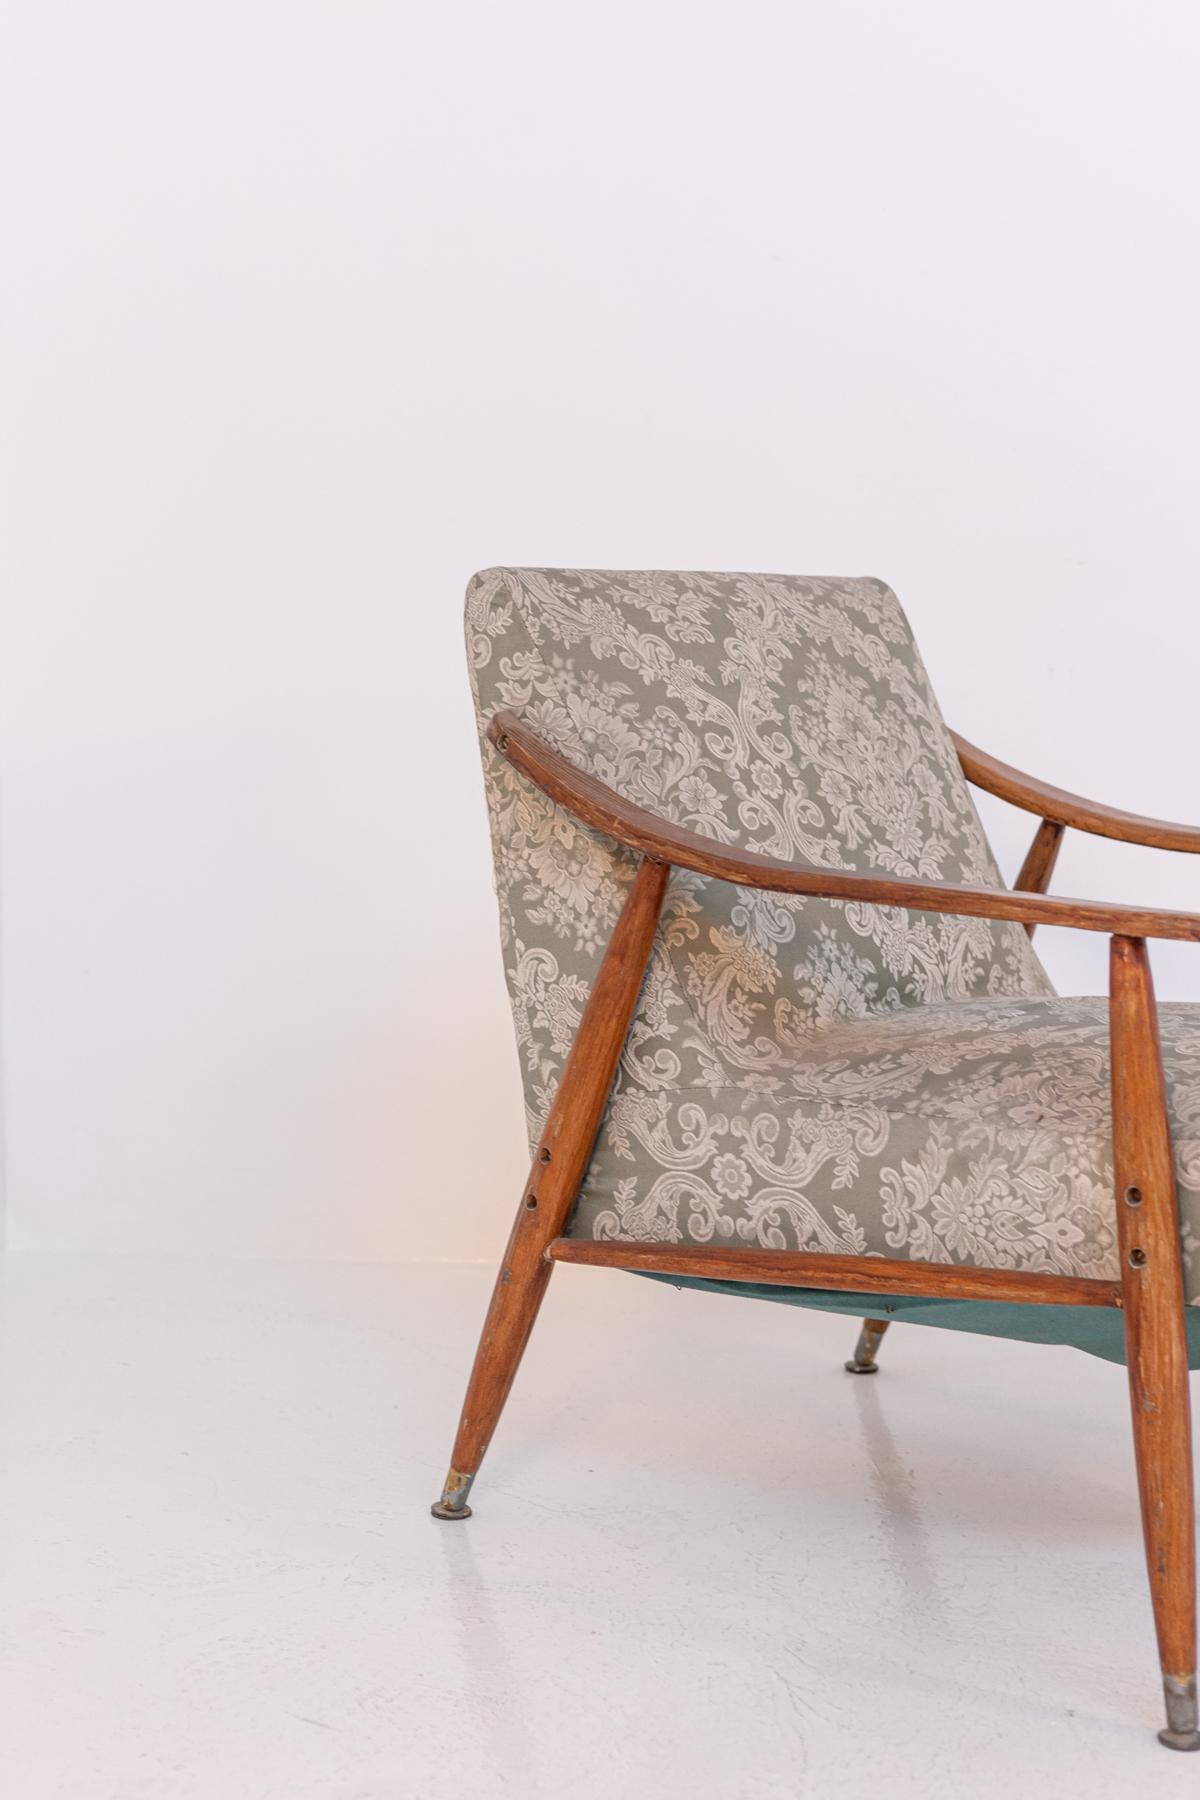 Seltener nordischer Sessel aus den 50er Jahren. Die Struktur ist aus Holz gefertigt. Die typisch nordischen Linien und das skandinavische Design verleihen dem Sessel Modernität und Wesentlichkeit, denn sein essentielles Design ist perfekt für jede